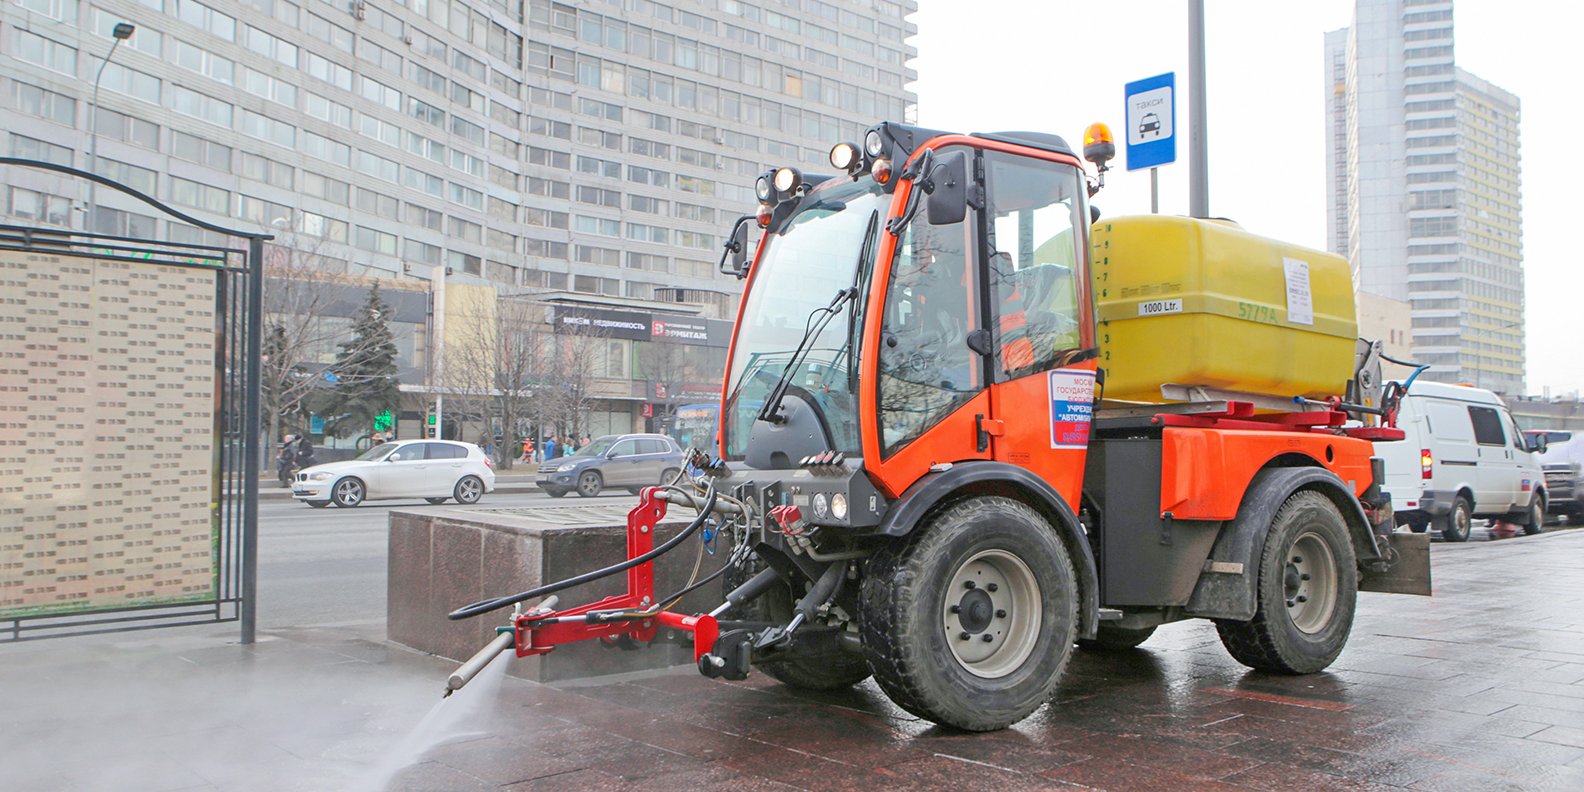 Городские службы Москвы переведены на усиленный режим работы из-за погоды